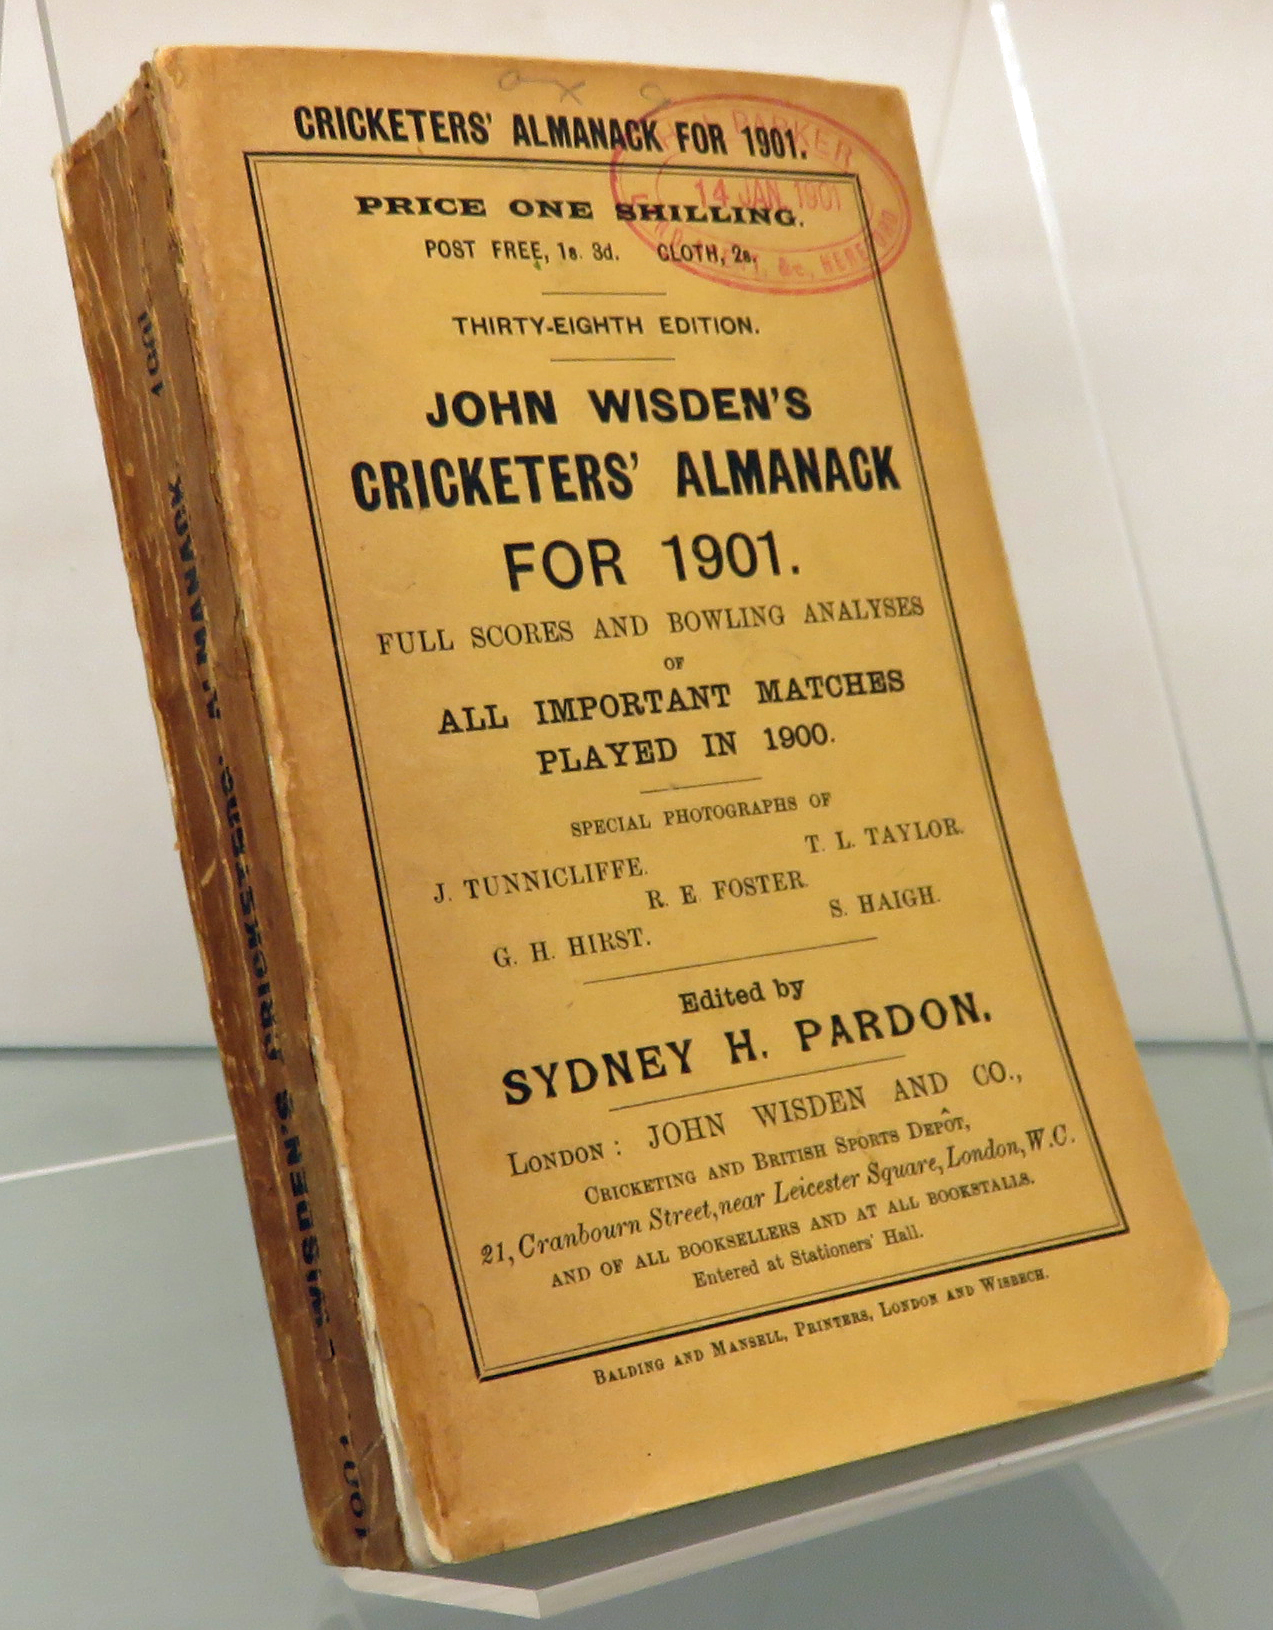 John Wisden's Cricketers' Almanack for 1901